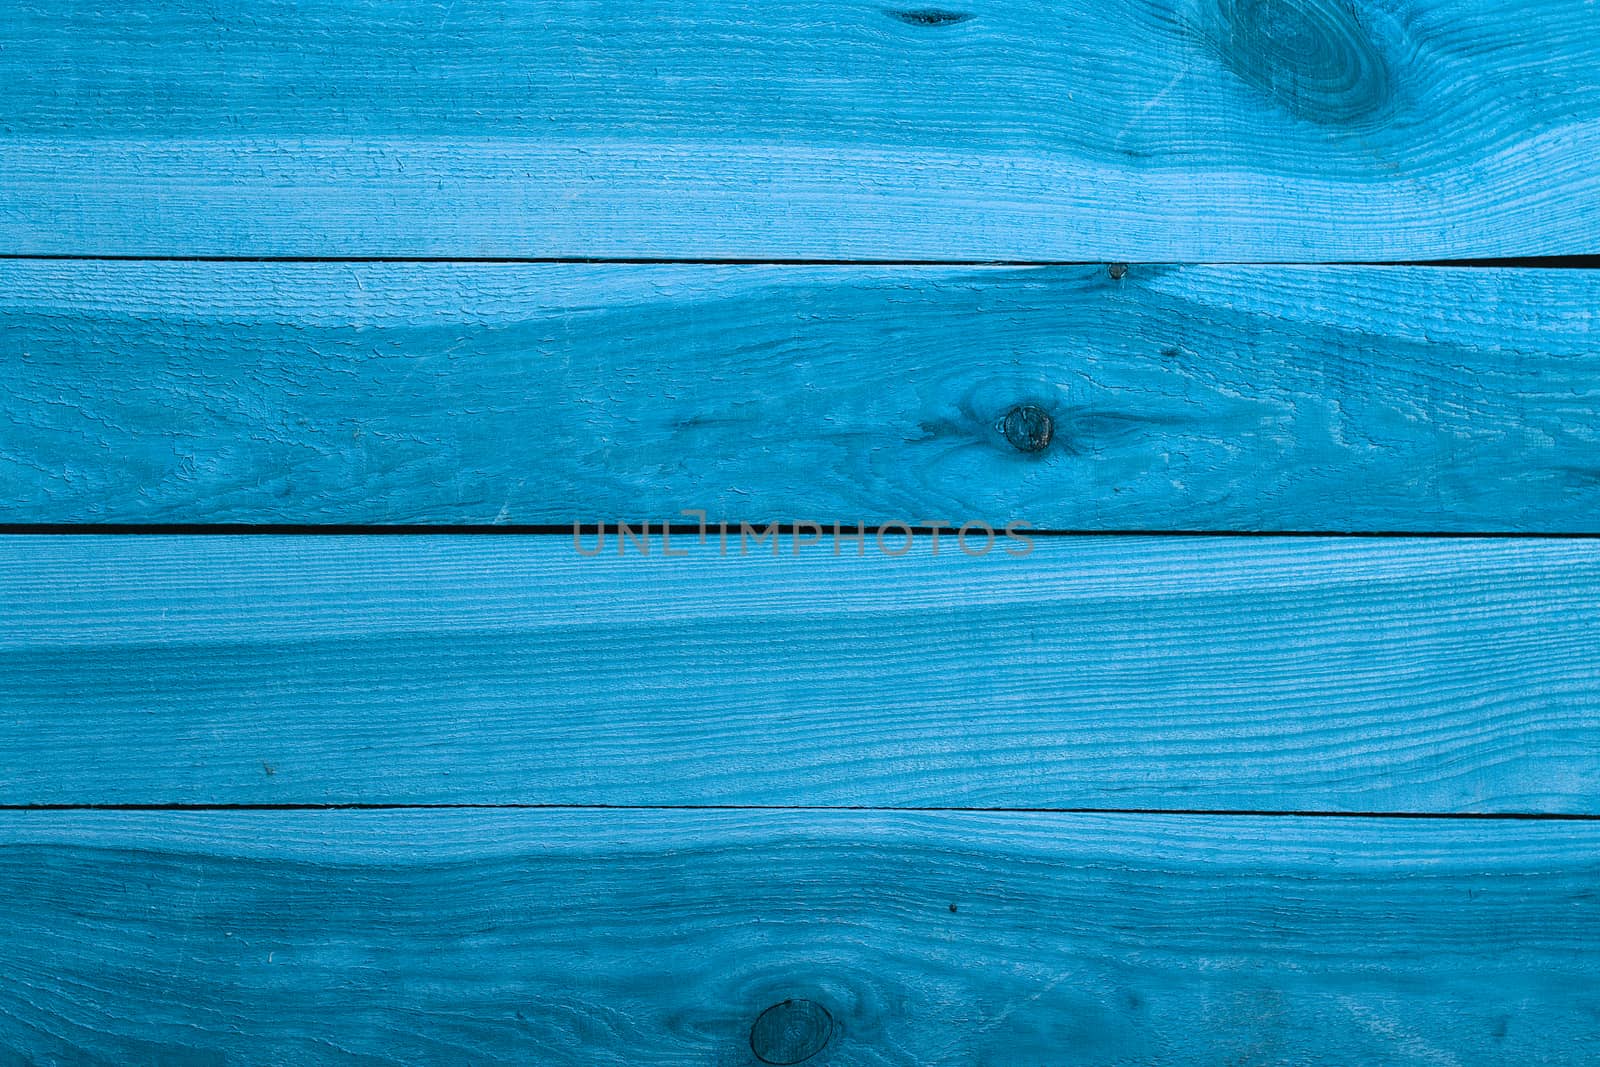 Grunge plank wood texture for background by natazhekova